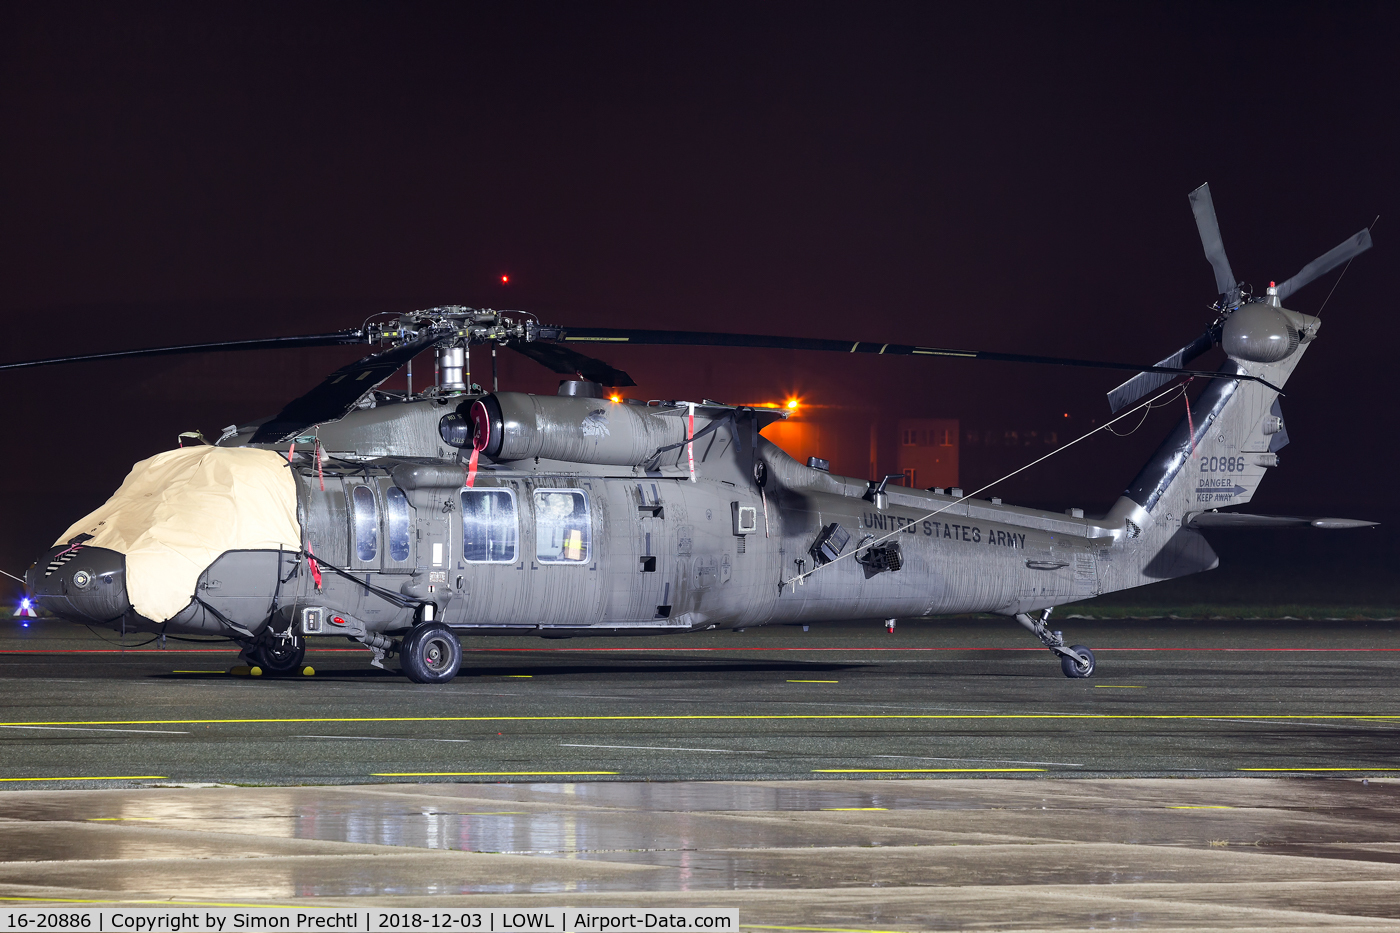 16-20886, Sikorsky UH-60M Black Hawk C/N 704789, 16-1620886 @ Linz Airport